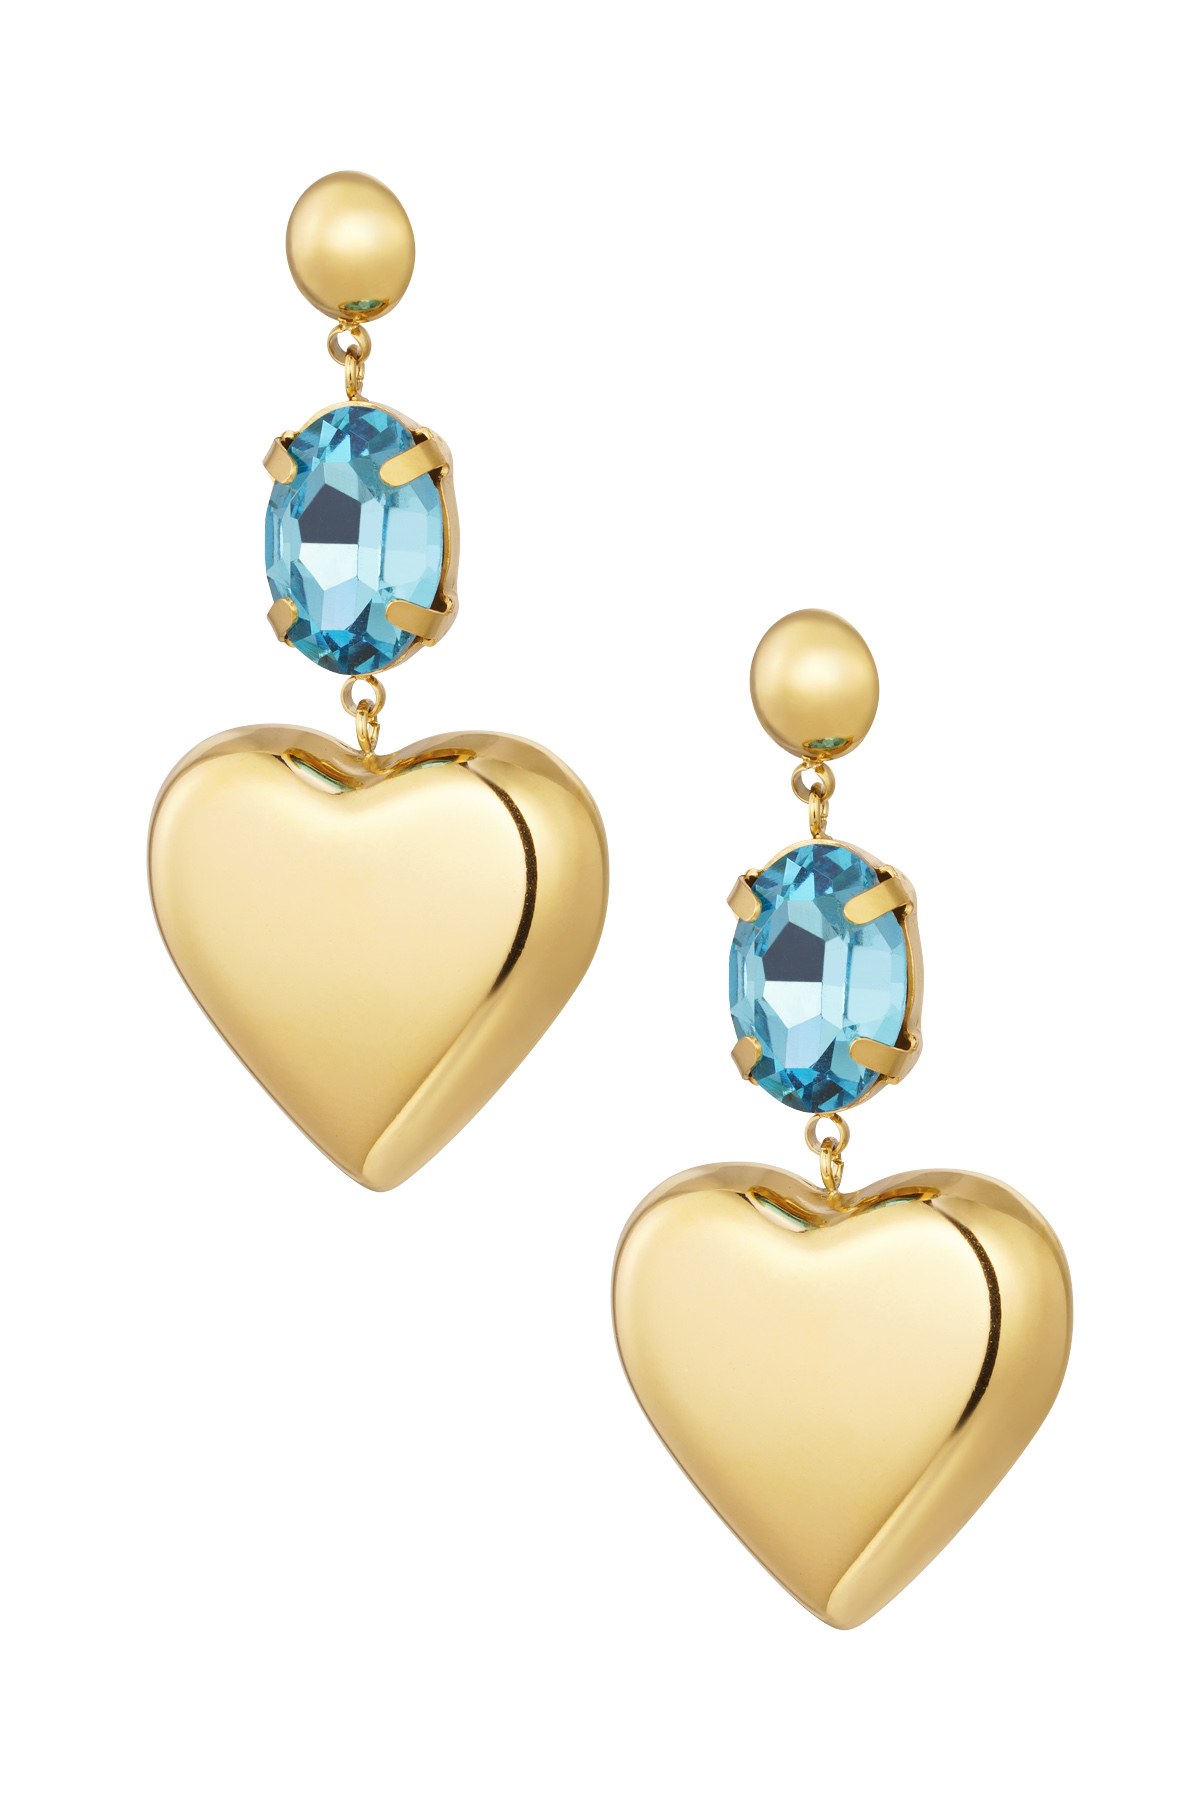 Orecchini cuore con pietra - Acciaio inossidabile oro/blu h5 